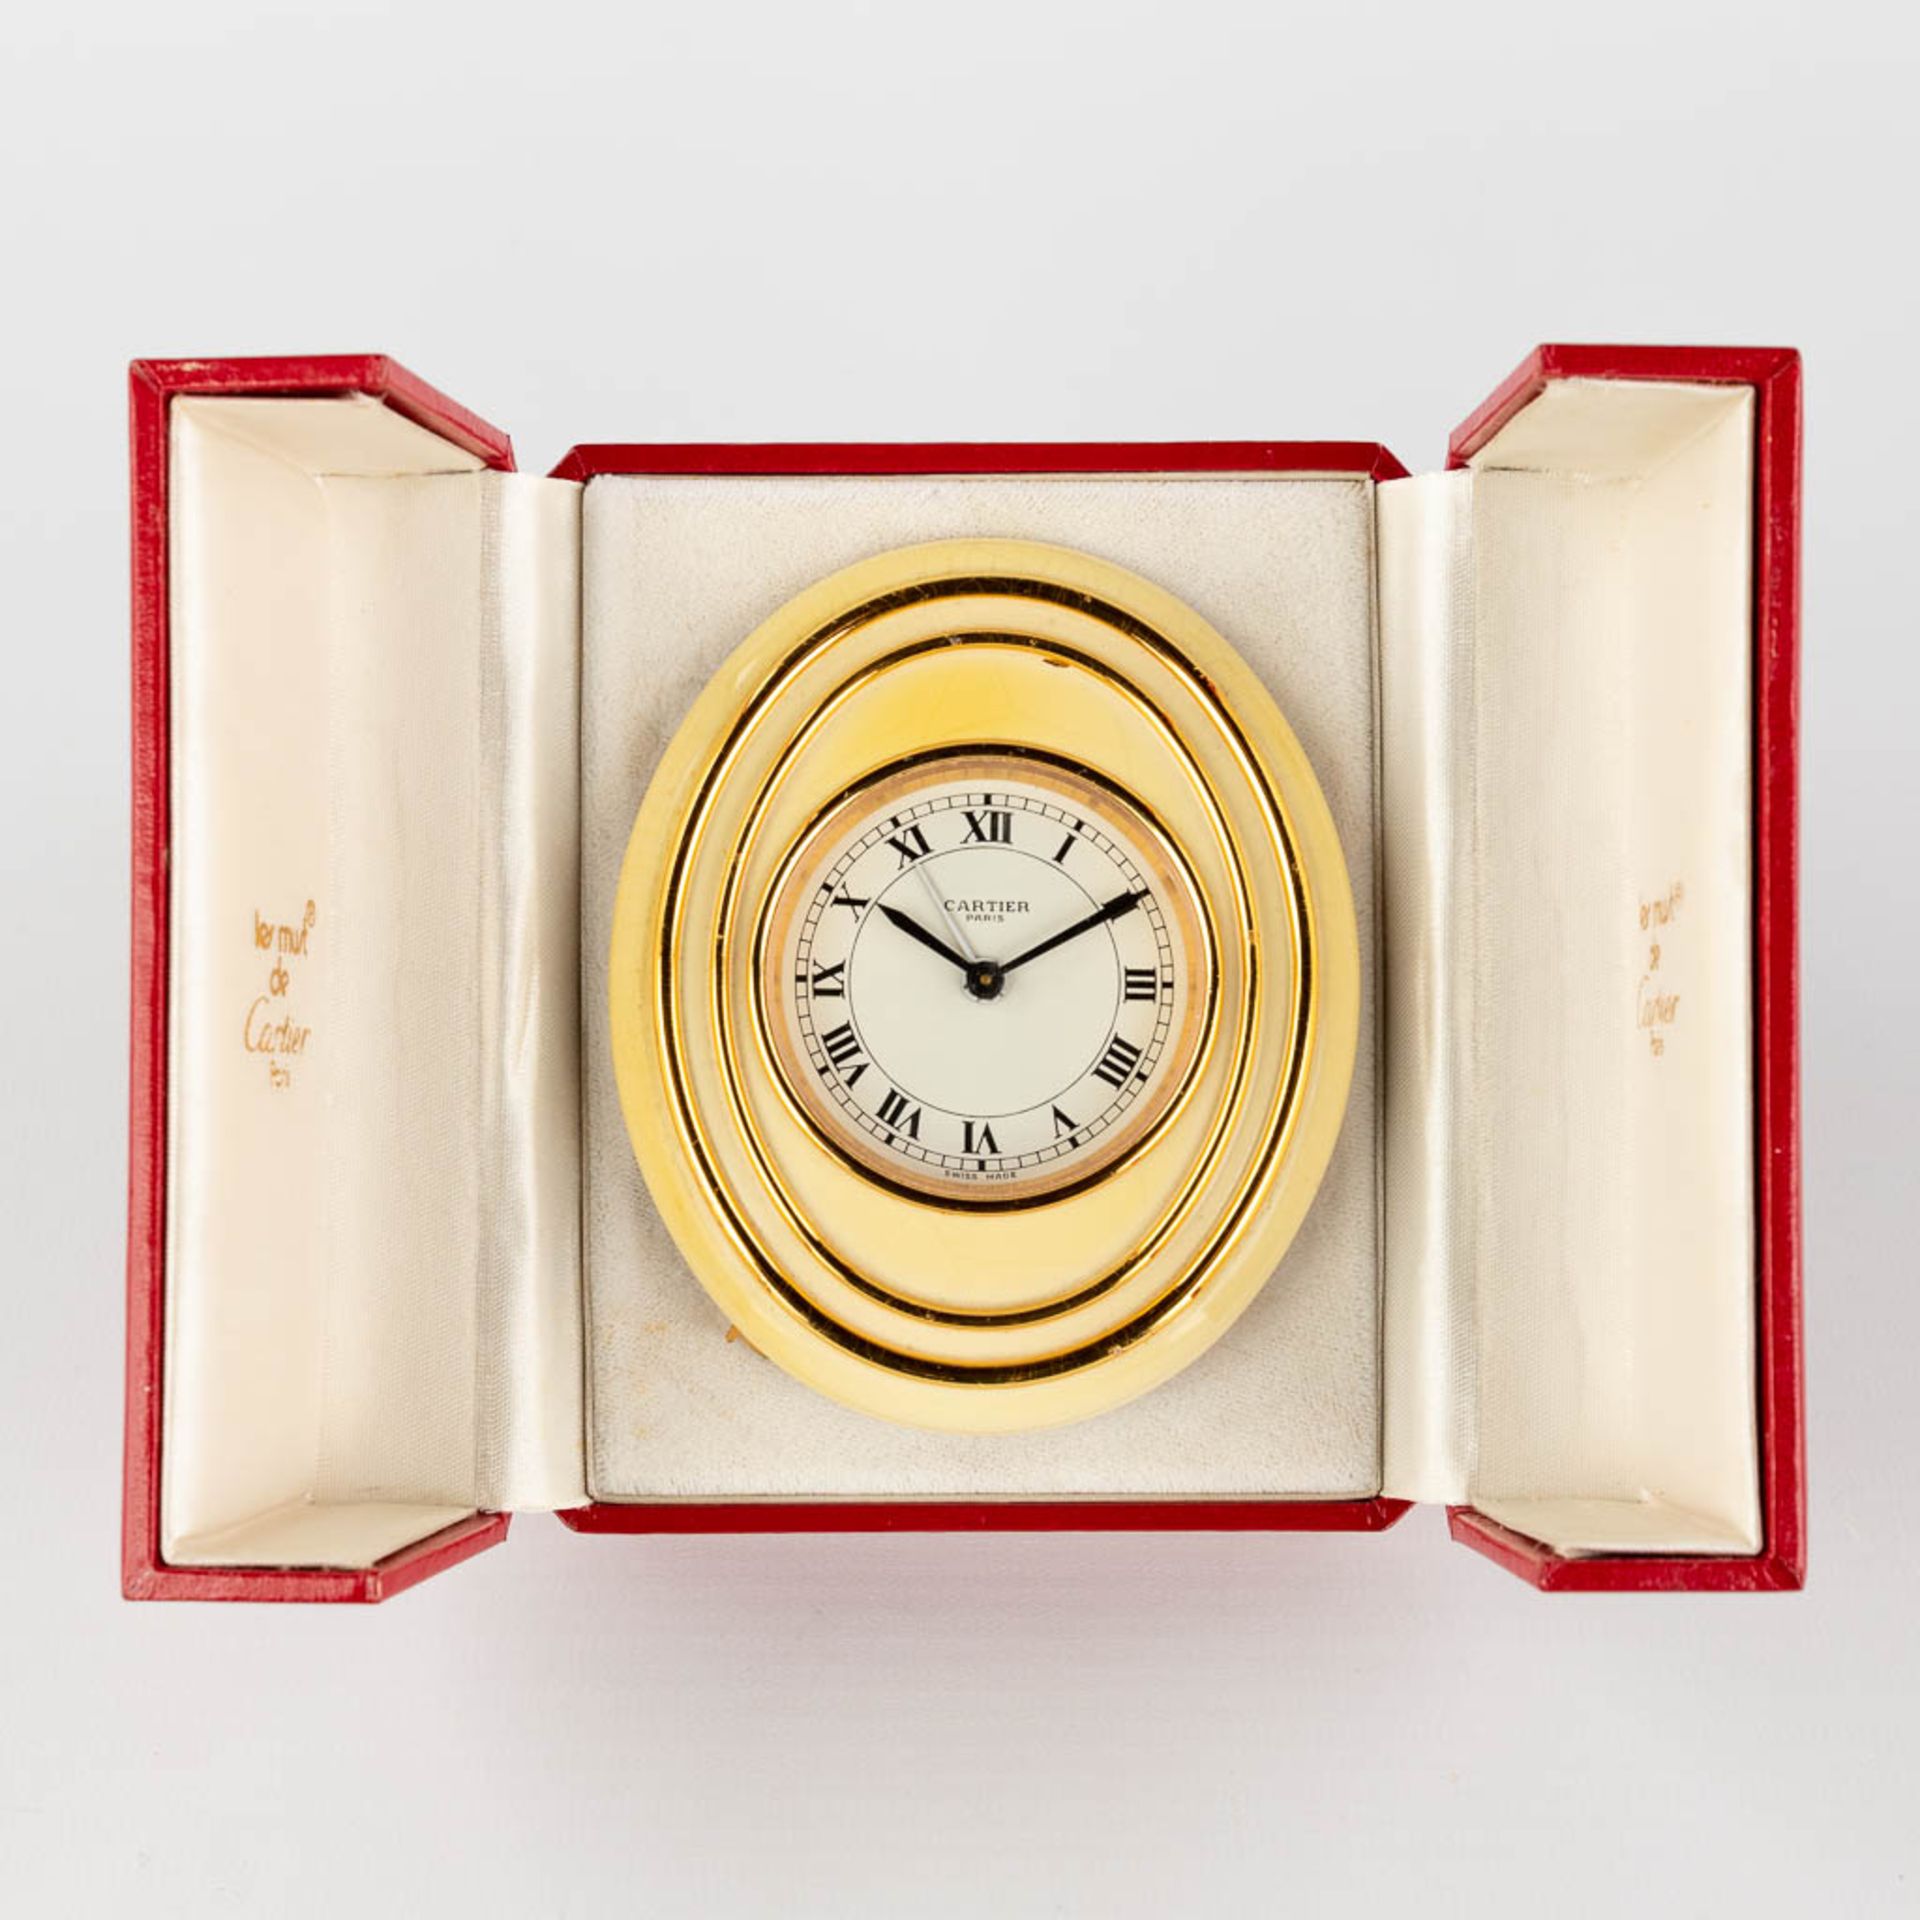 Cartier, a travel alarm clock, 7511 with the original box.